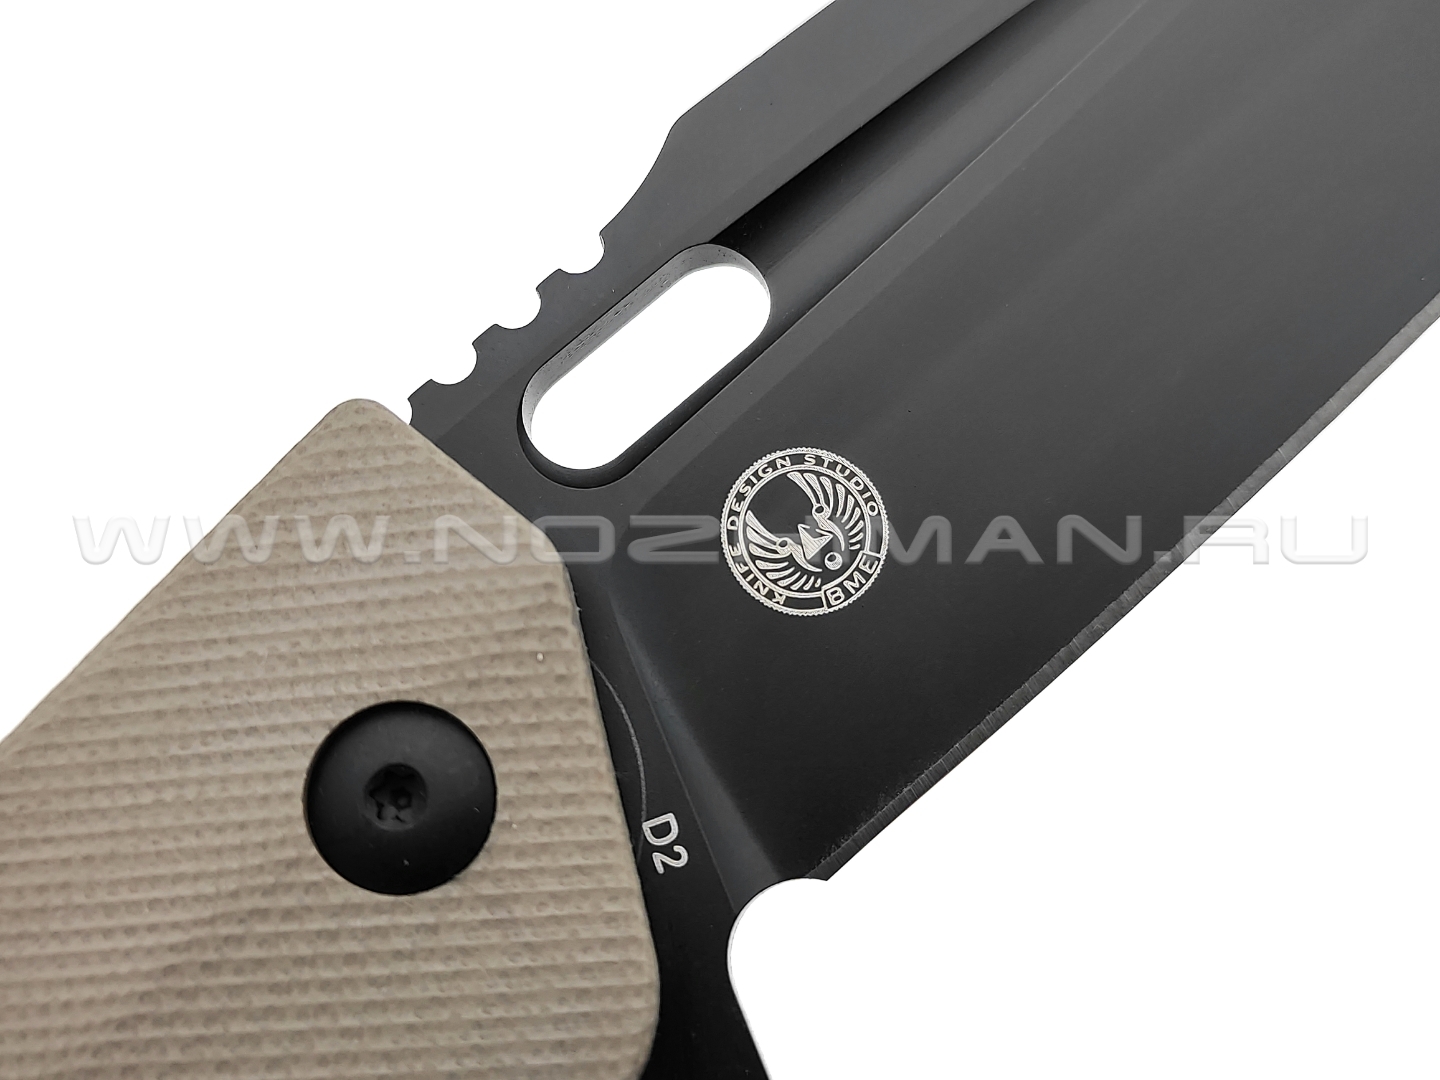 Нож Boker Plus Caracal Folder Tactical 01BO759 сталь D2 black, рукоять G10 tan